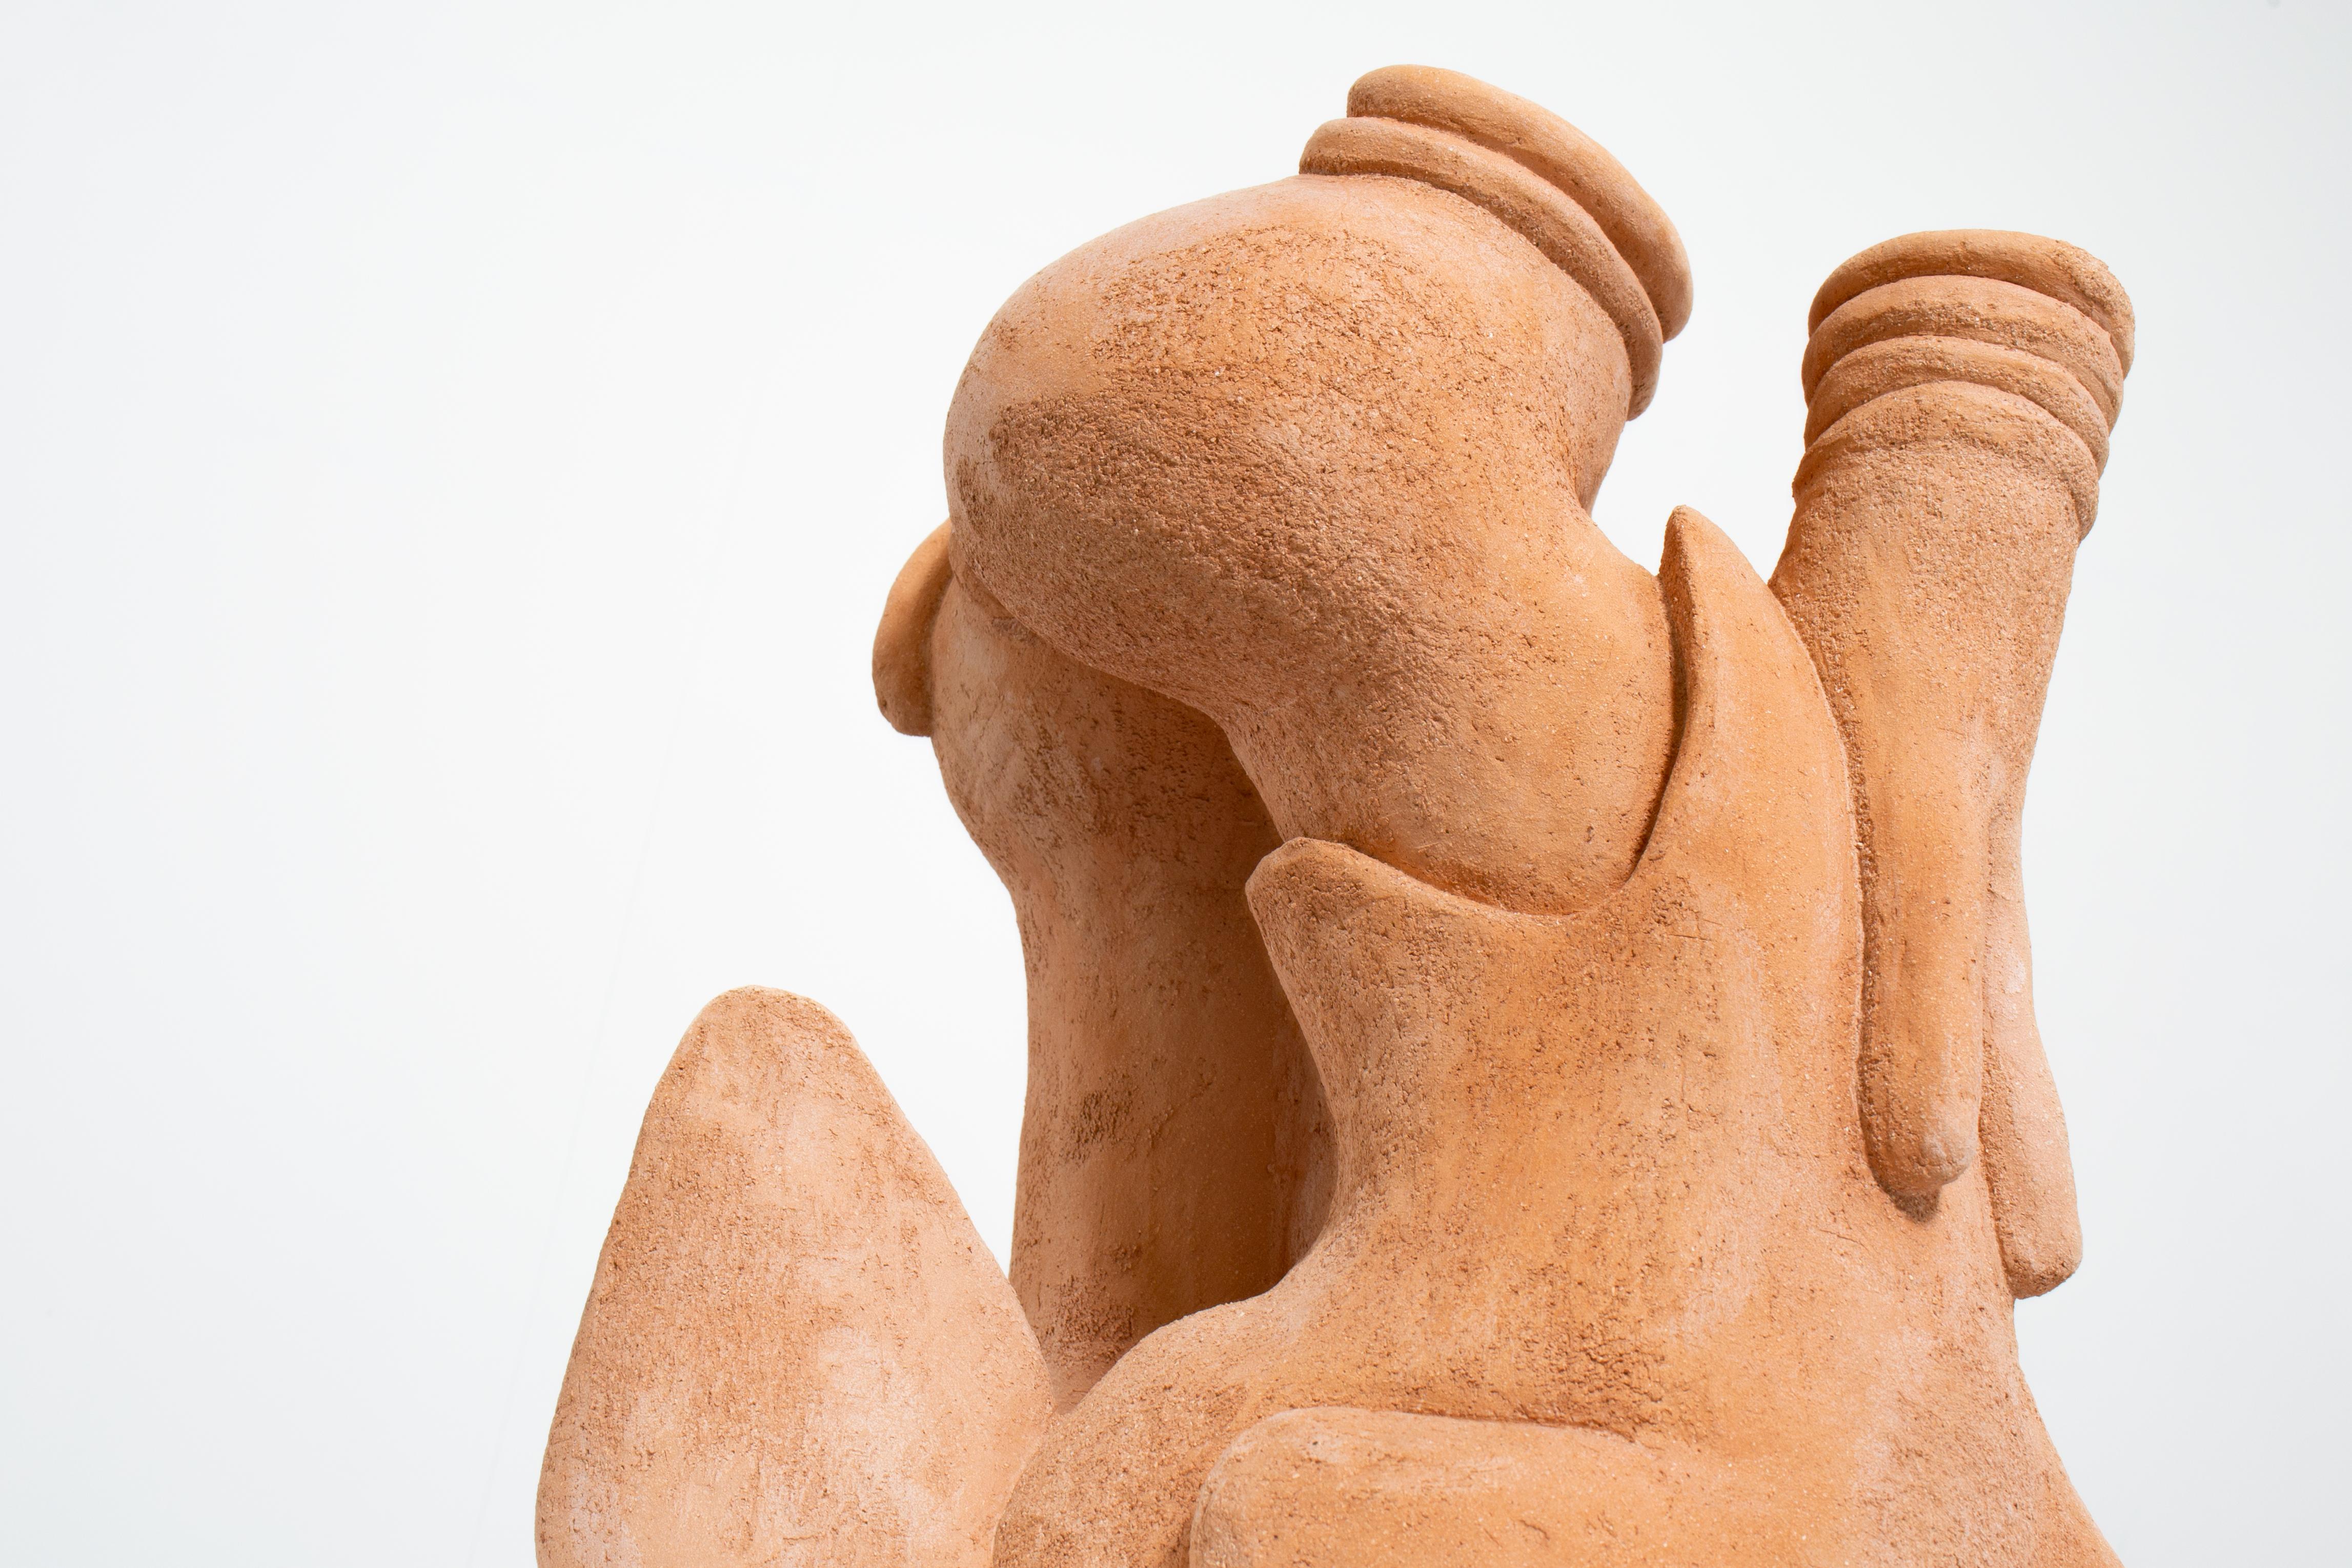 Ole Fredrik Hvidsten Abstract Sculpture – "Du hast deinen Fuß in meinen Lebensraum gesetzt" Keramik-Skulptur von Hvidsten